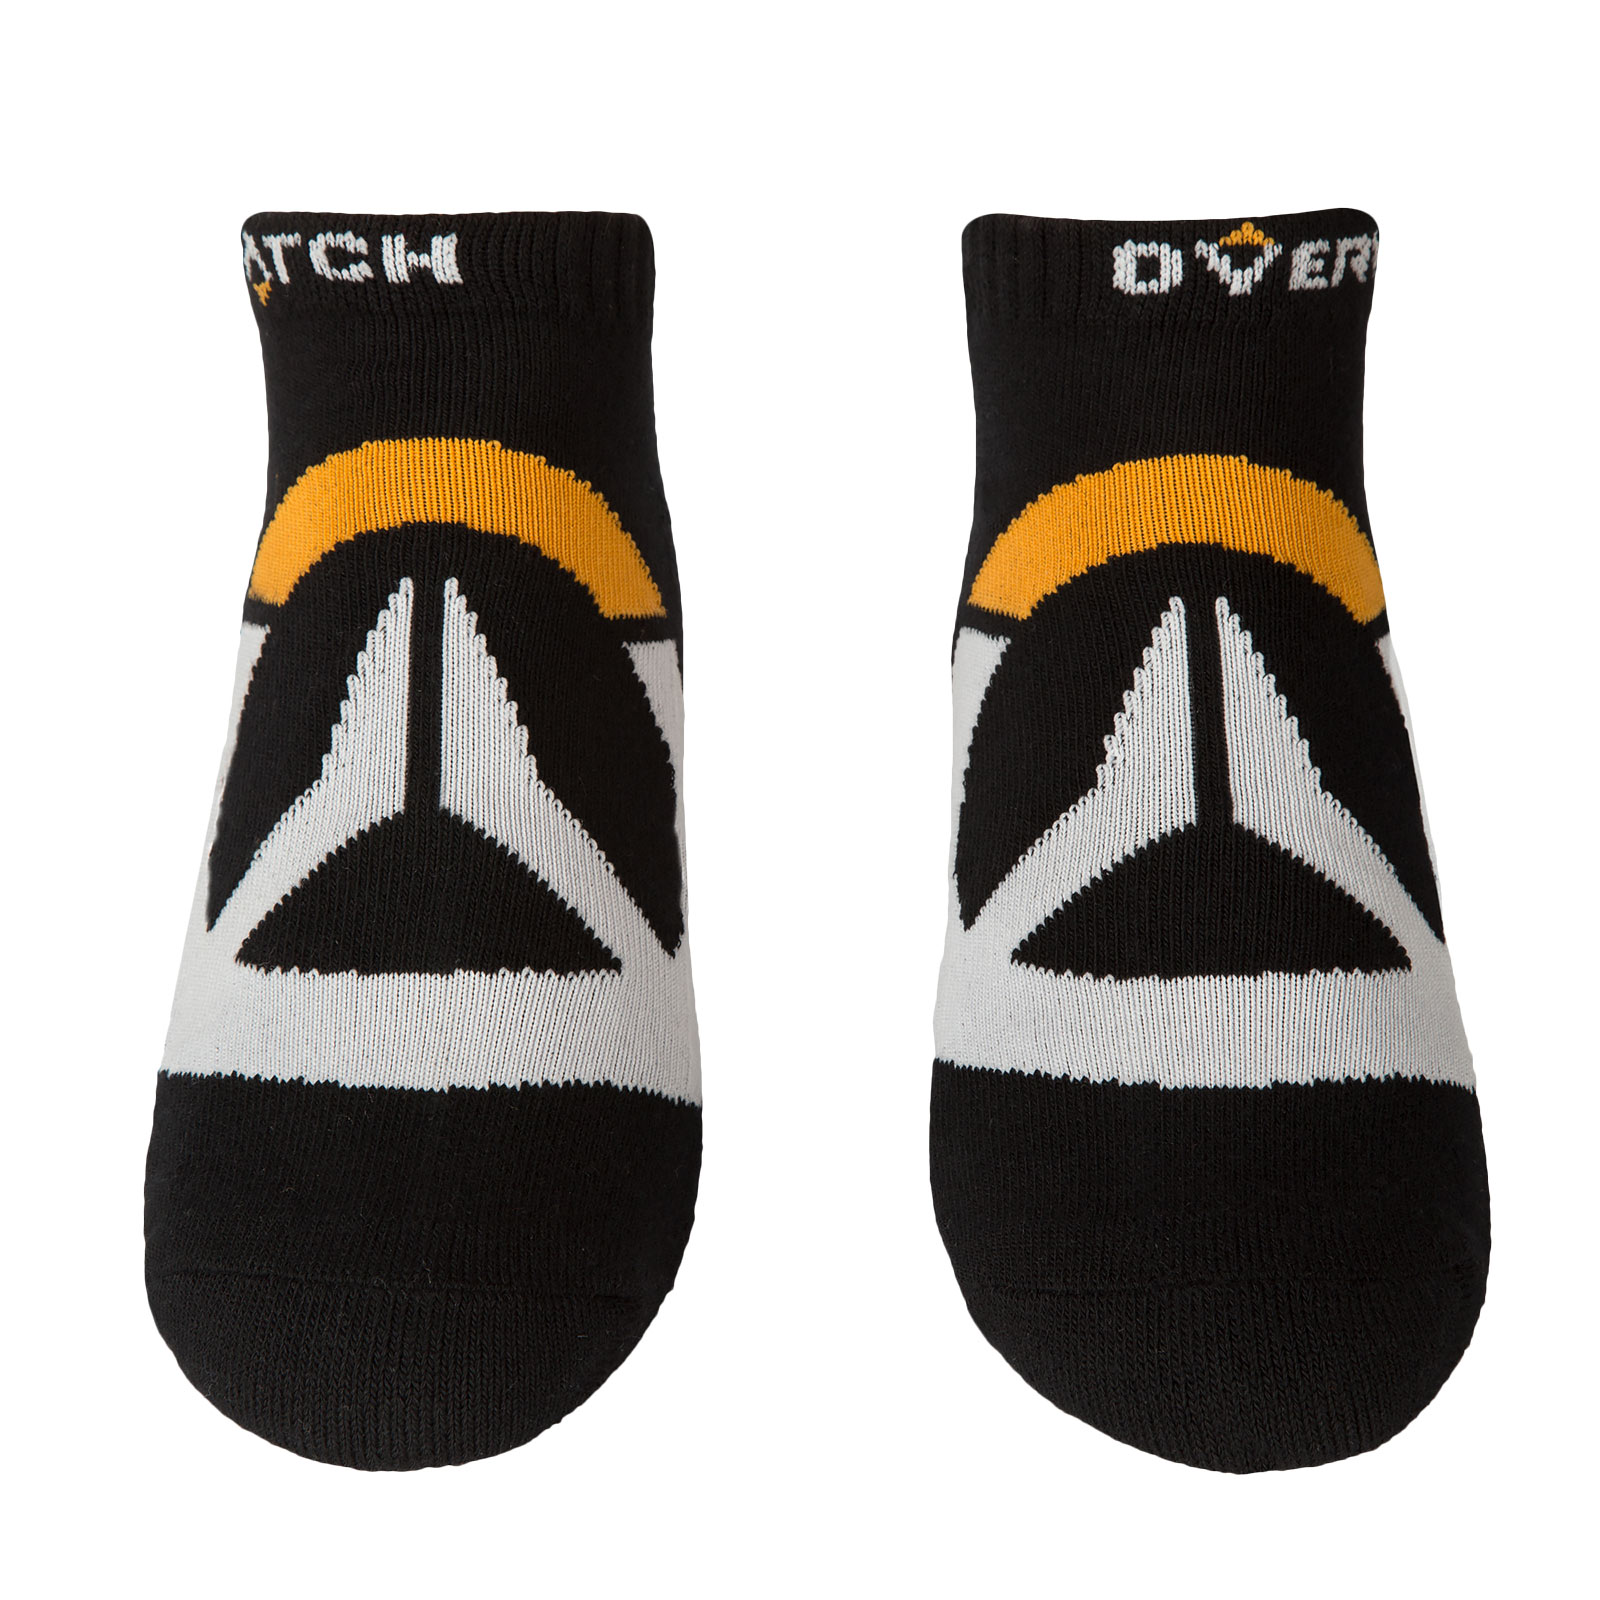 Overwatch - Logo Socken 3er Set schwarz